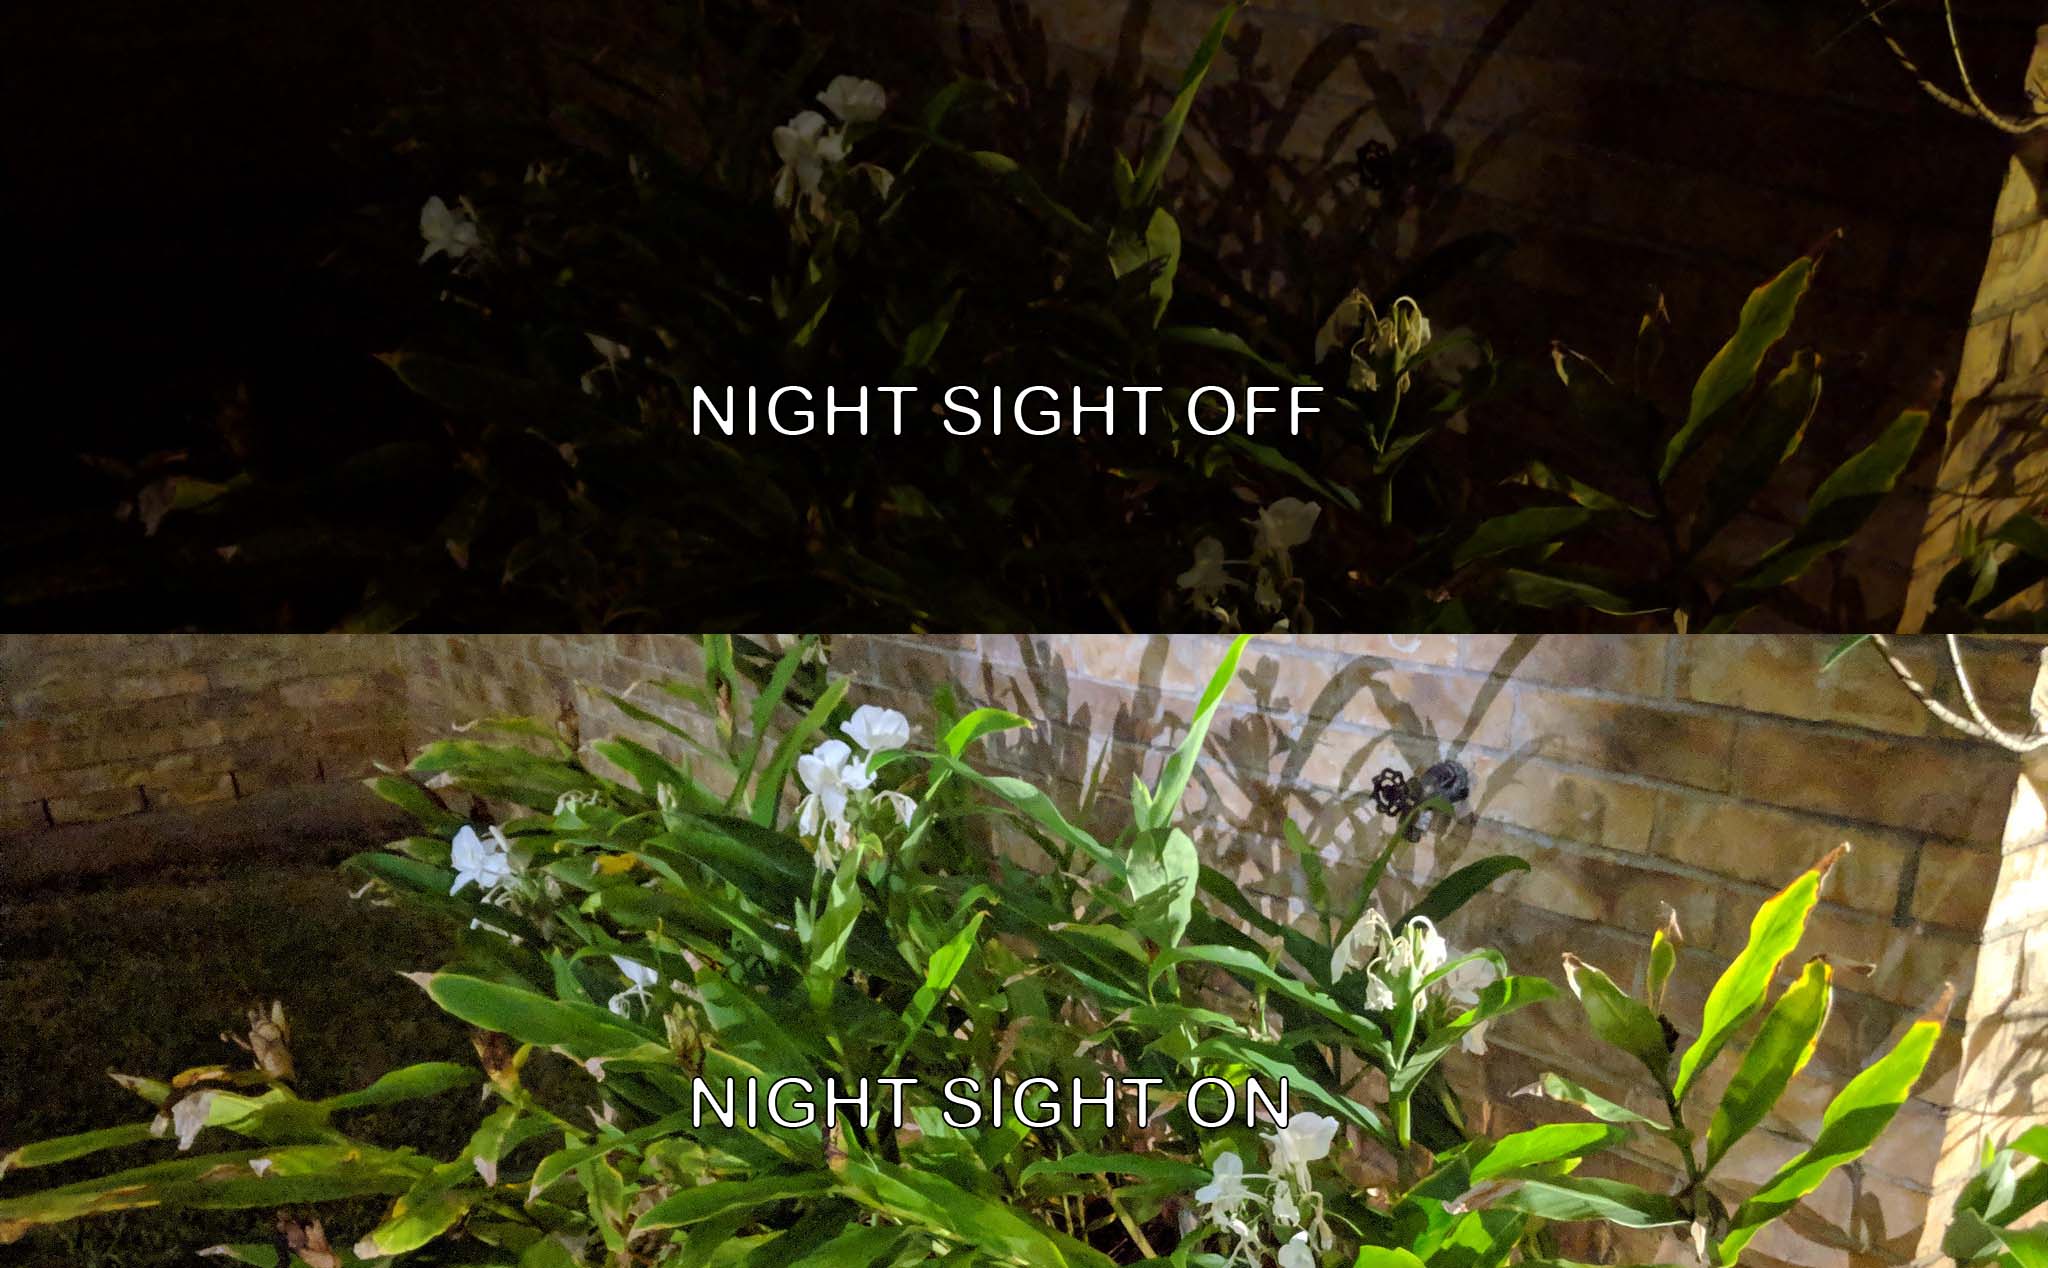 Hướng dẫn cài Google Night Sight Camera cho Xiaomi Mi Mix 2S, Mi 8